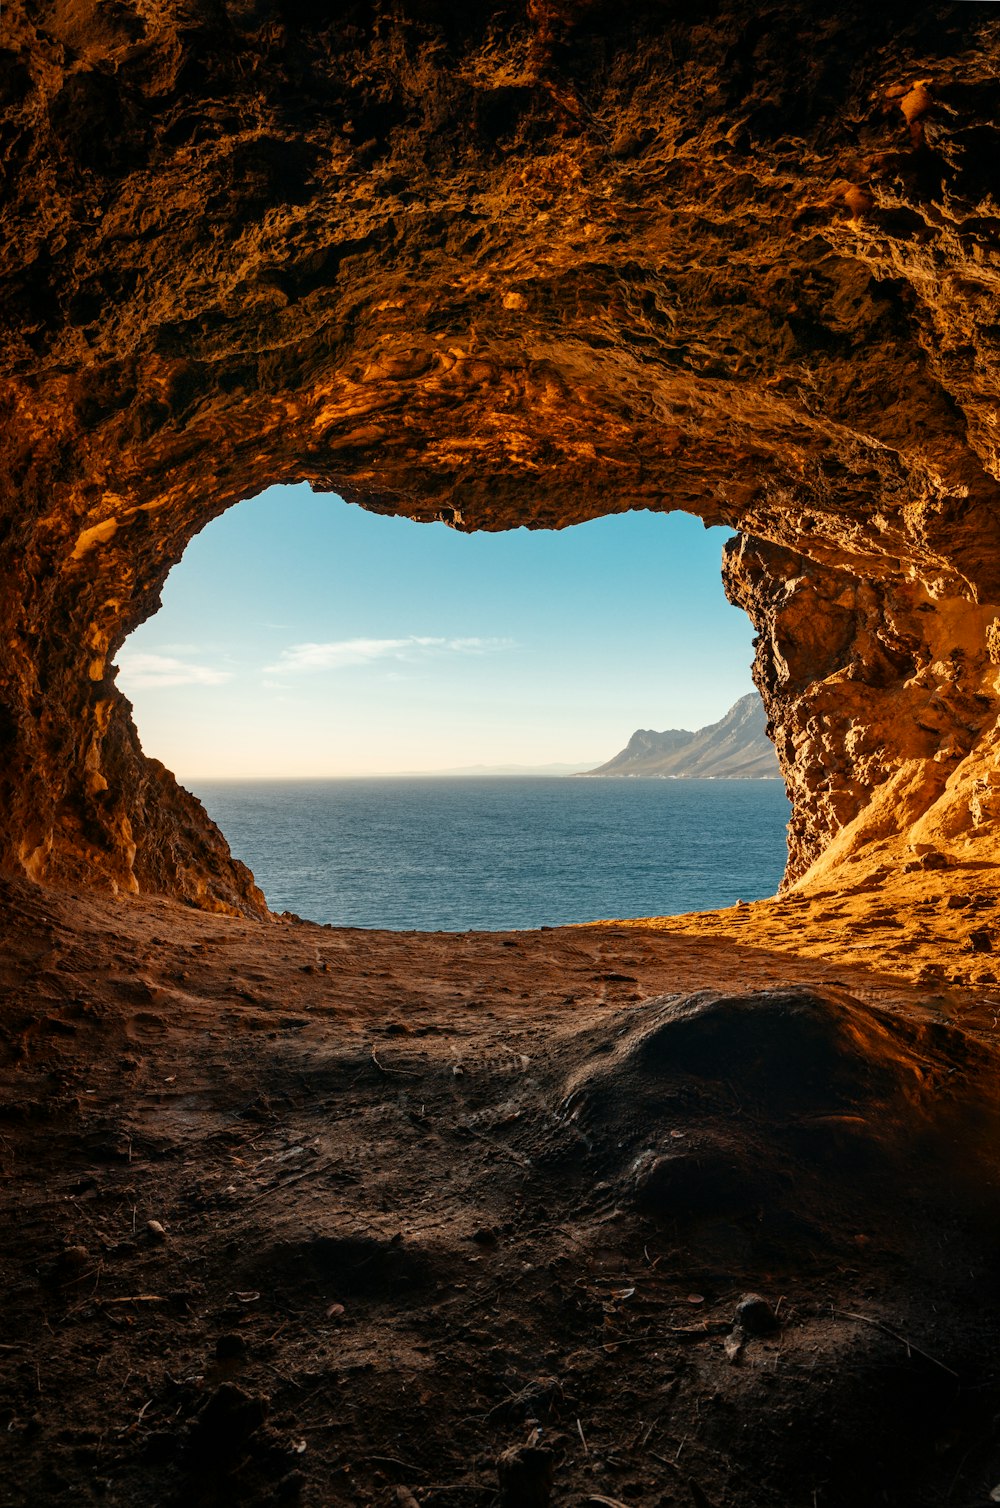 Braune Höhle in der Nähe von Gewässern während des Tages